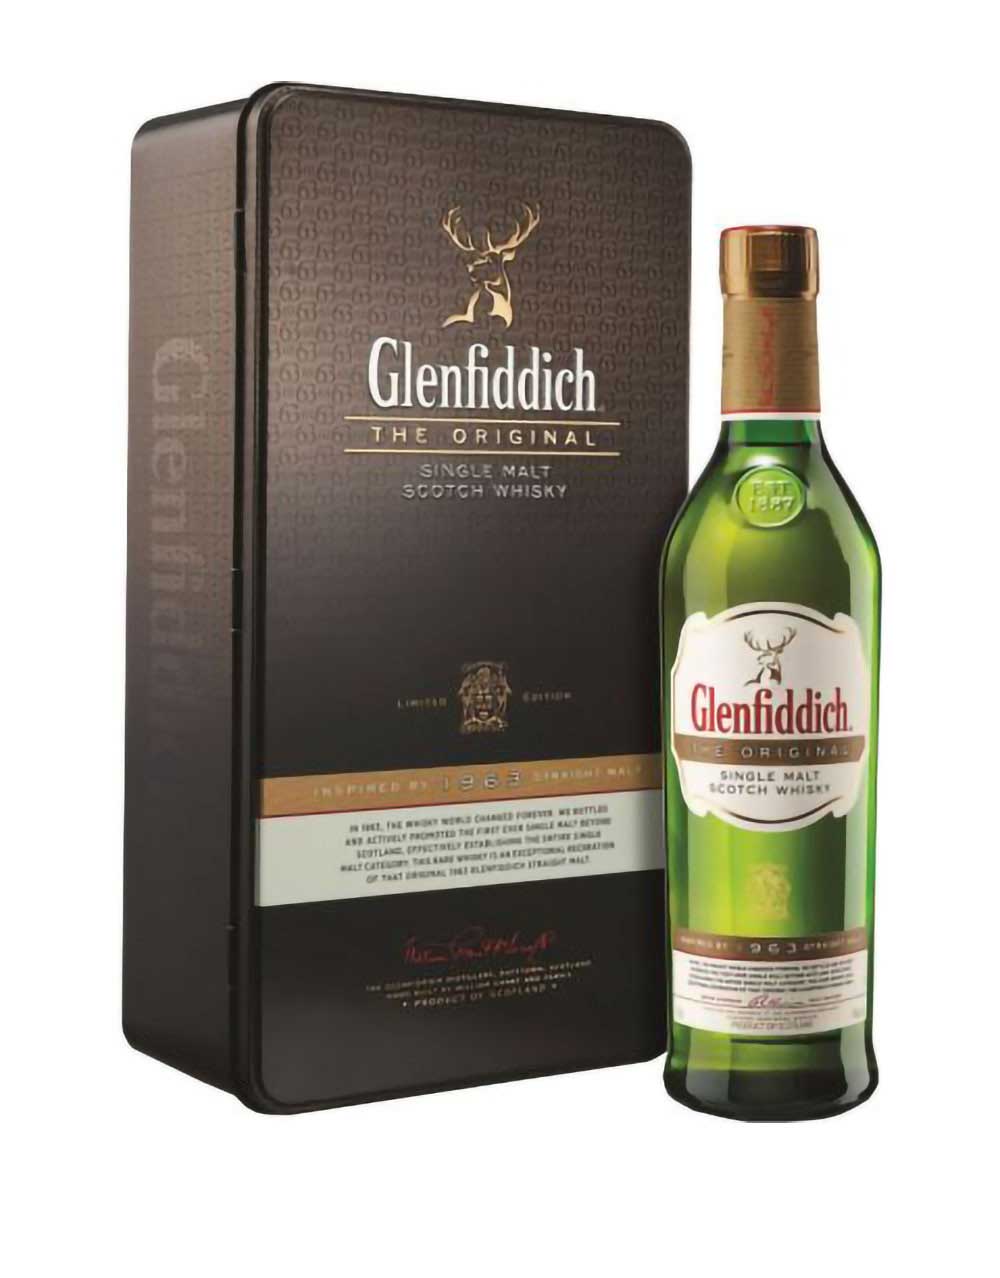 Glenfiddich The Original 1963 Single Malt Scotch Whisky